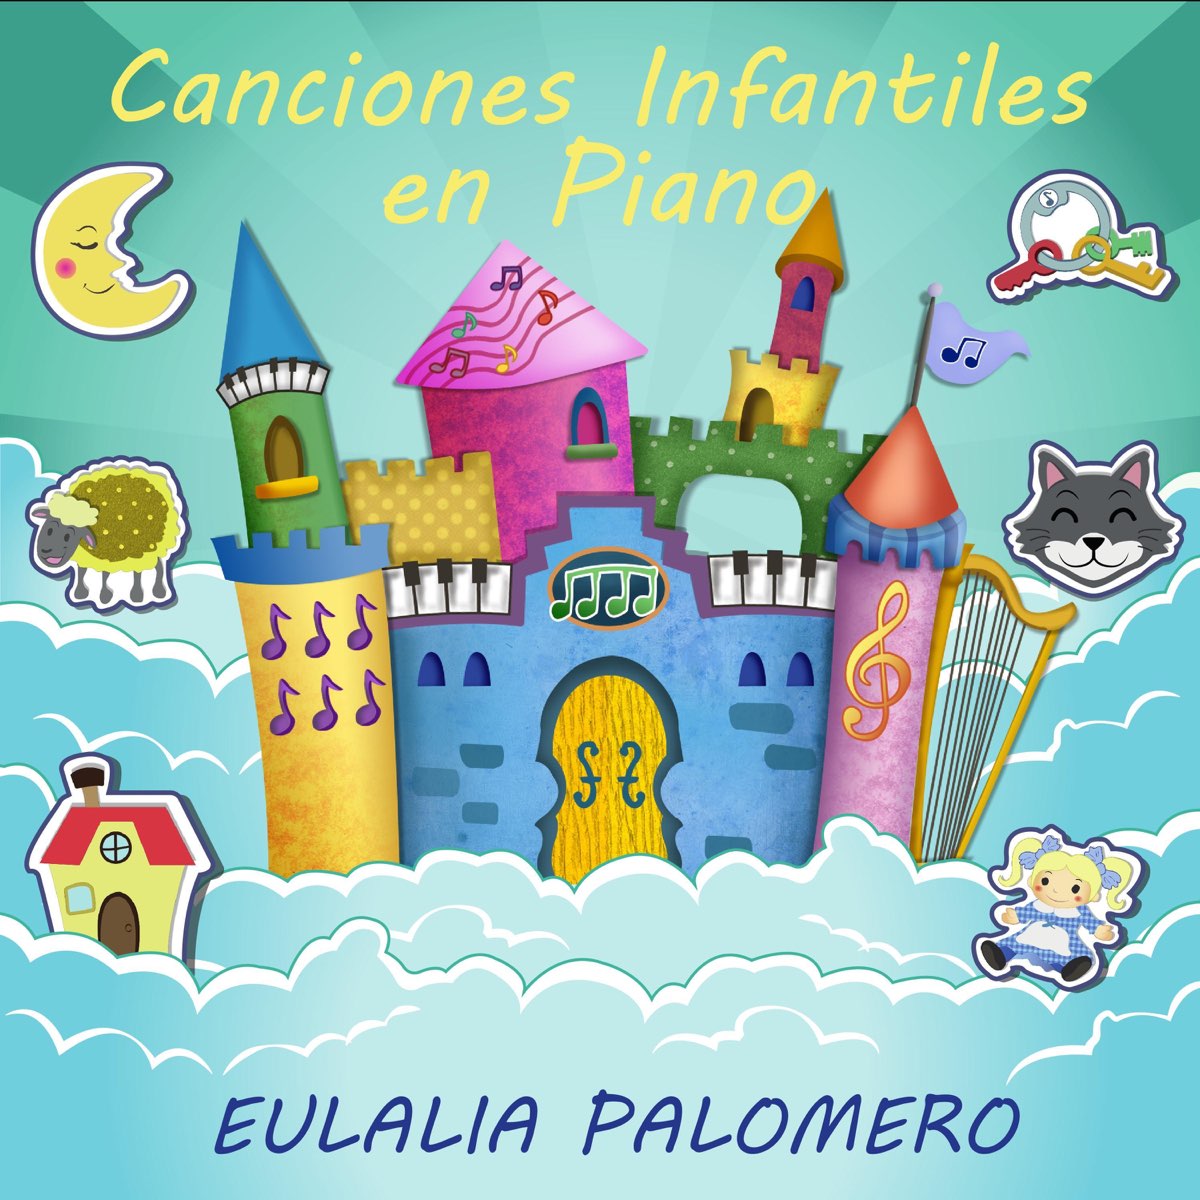 Canciones Infantiles en Piano de Eulalia Palomero en Apple Music